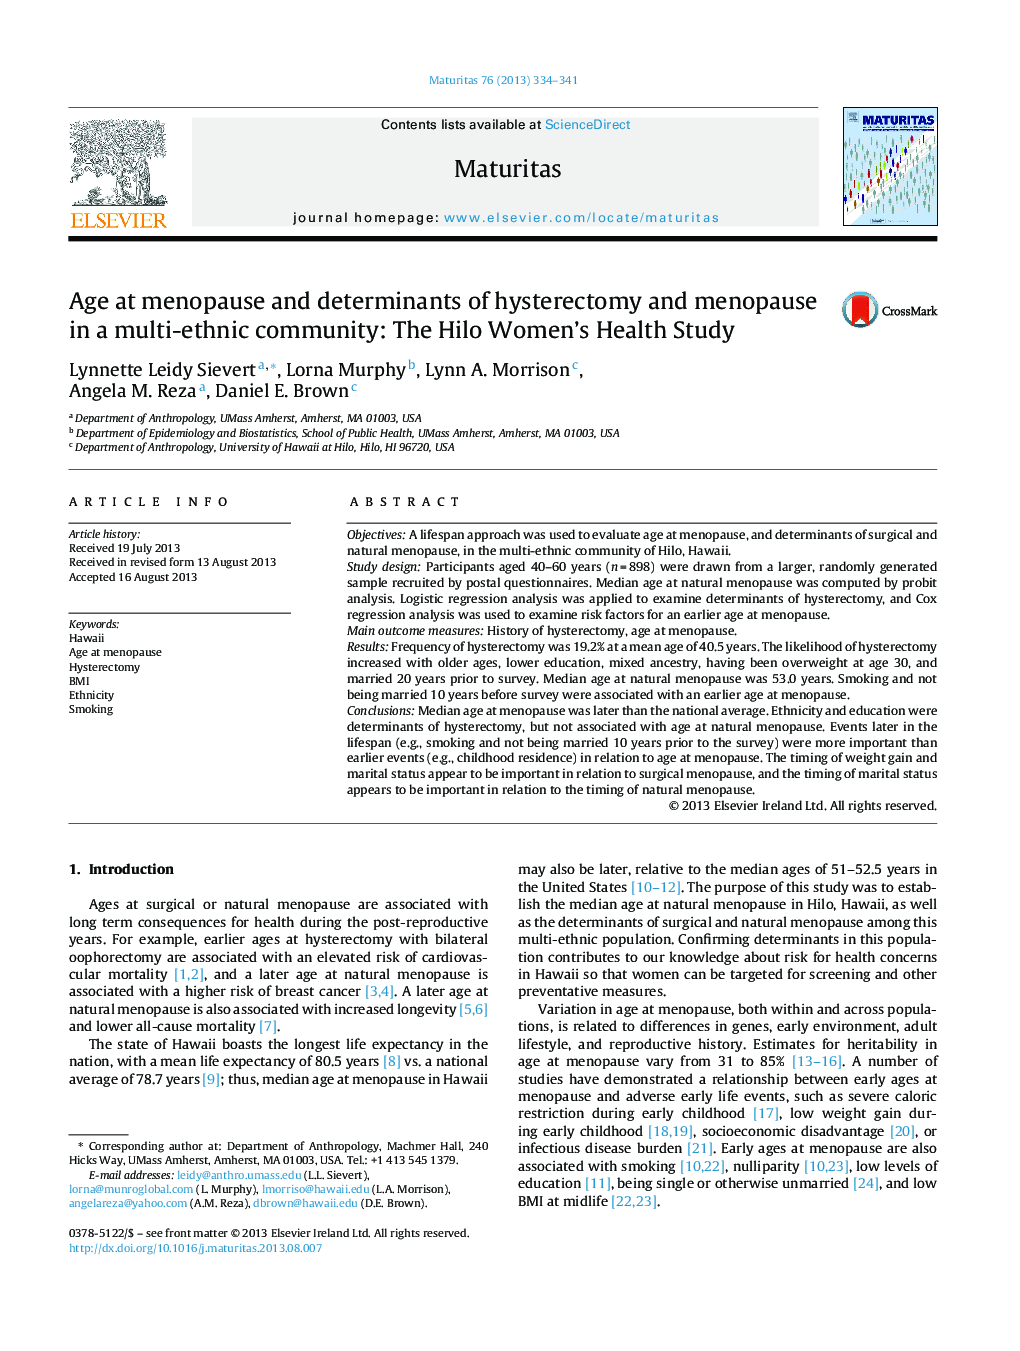 سن در منوپوز و عوامل تعیین کننده هیسترکتومی و یائسگی در جامعه چند قومی: مطالعه سلامت زنان هیلو 